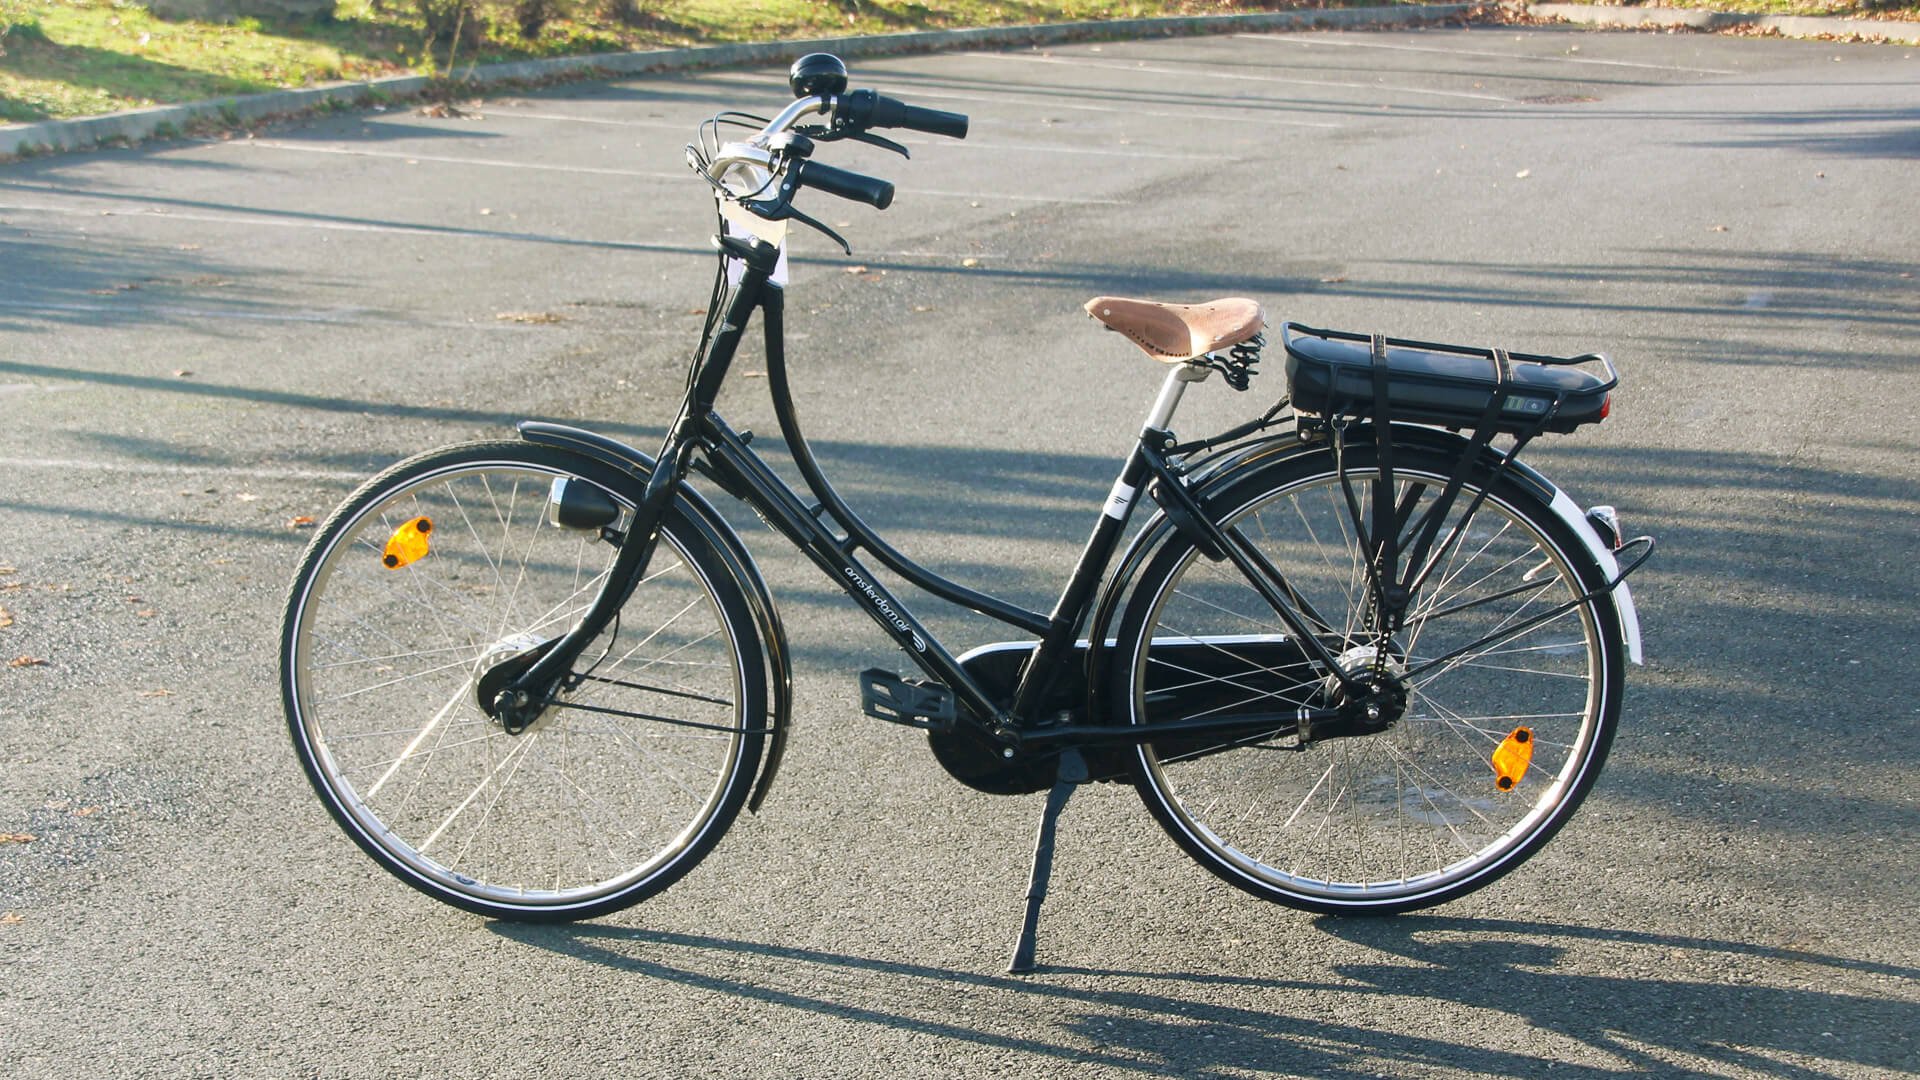 Vélo électrique 1881 Premium personnalisé - Motorisation V-Fiets et boîte Nexus 7